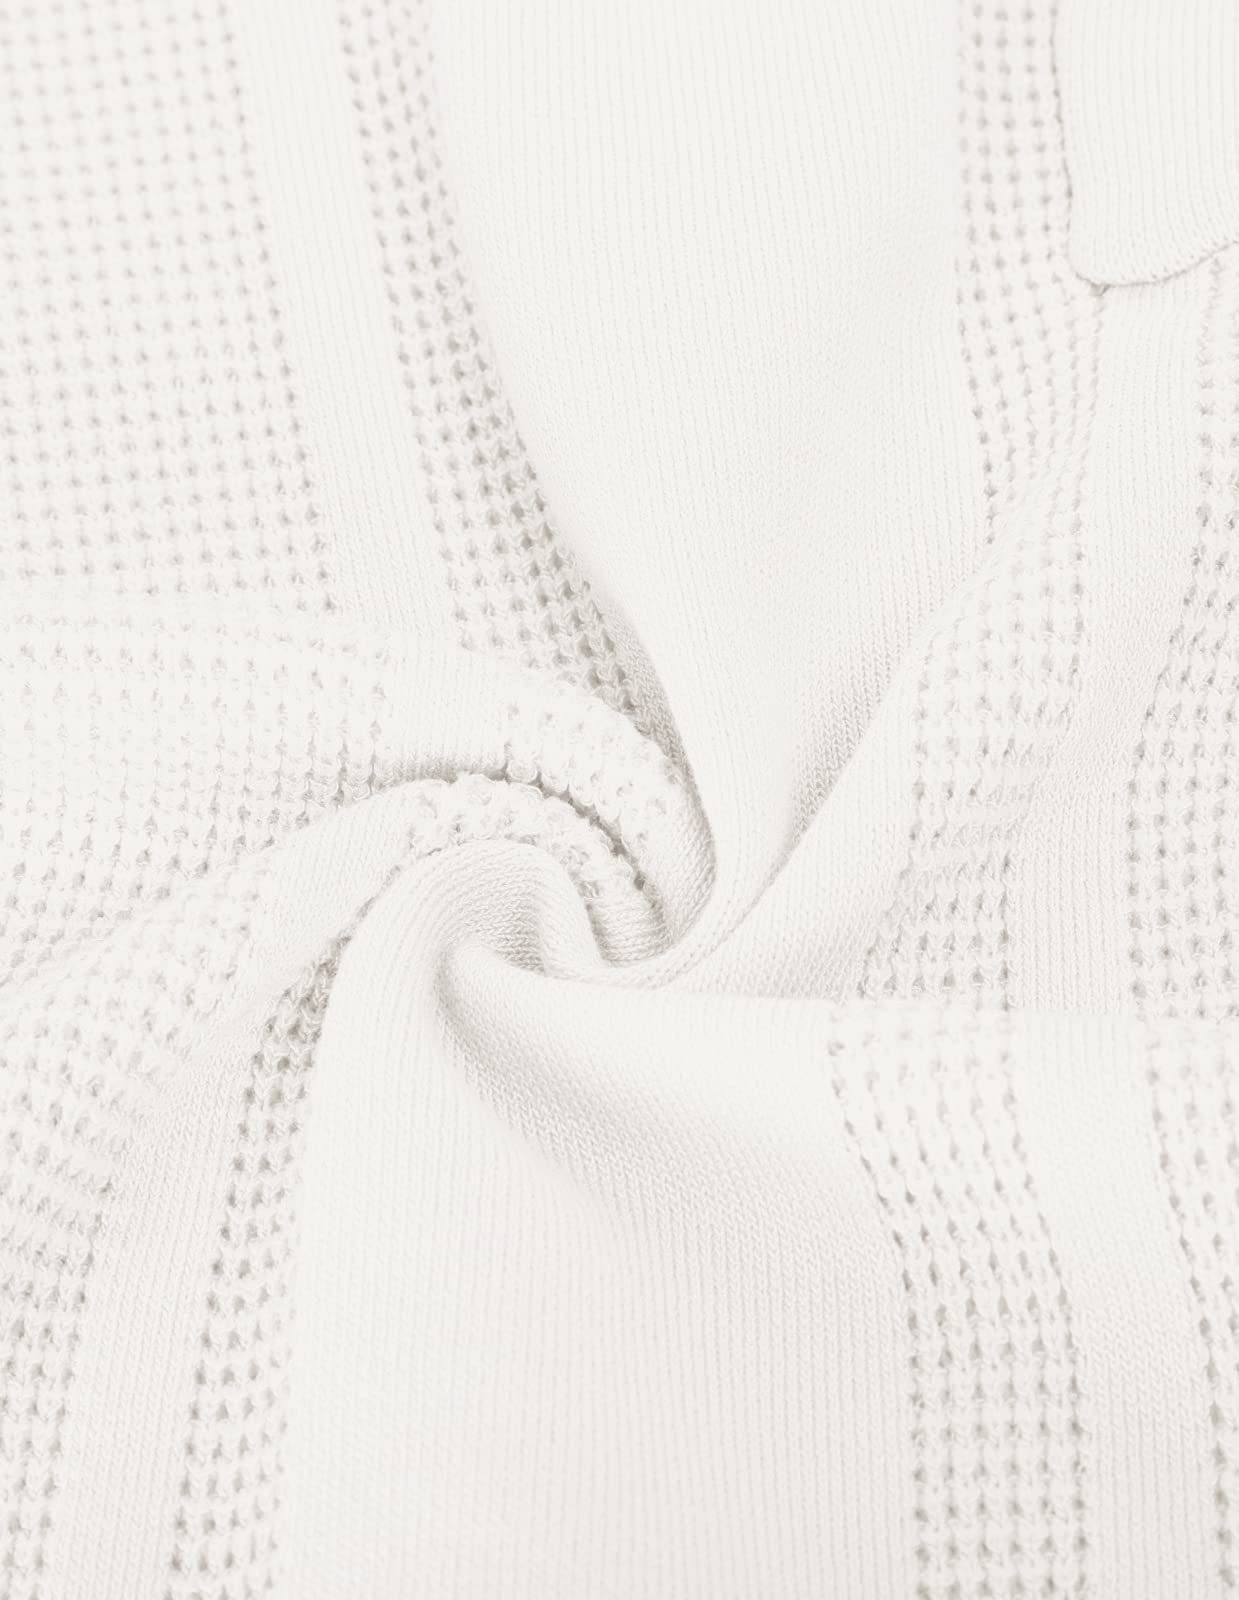 GRACE KARIN Men's Knit Polo Shirts Short Sleeve Texture Lightweight Golf Shirts Tops